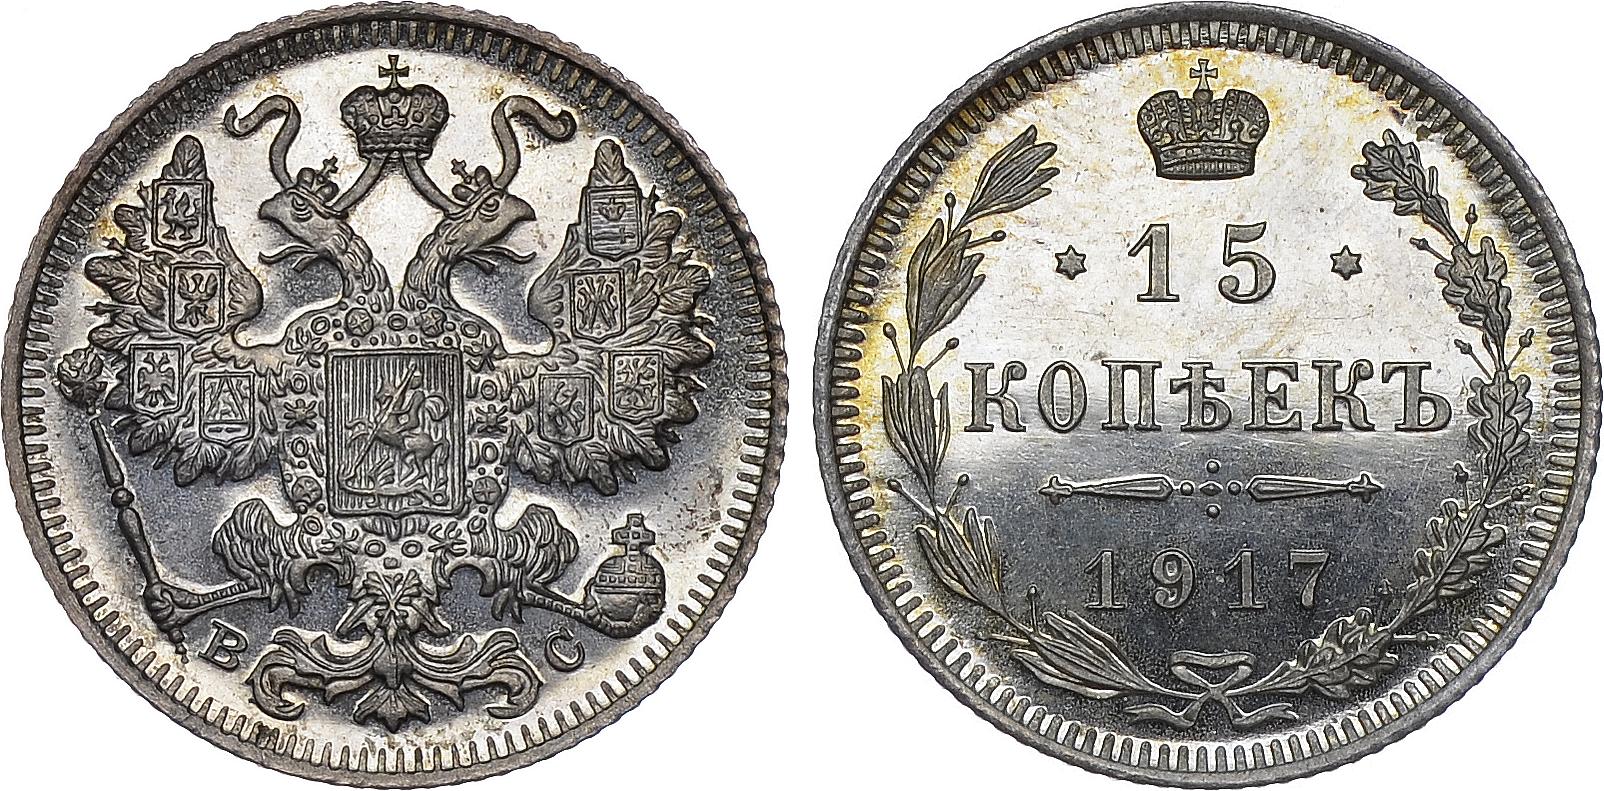 15 серебряных копеек 1917 года